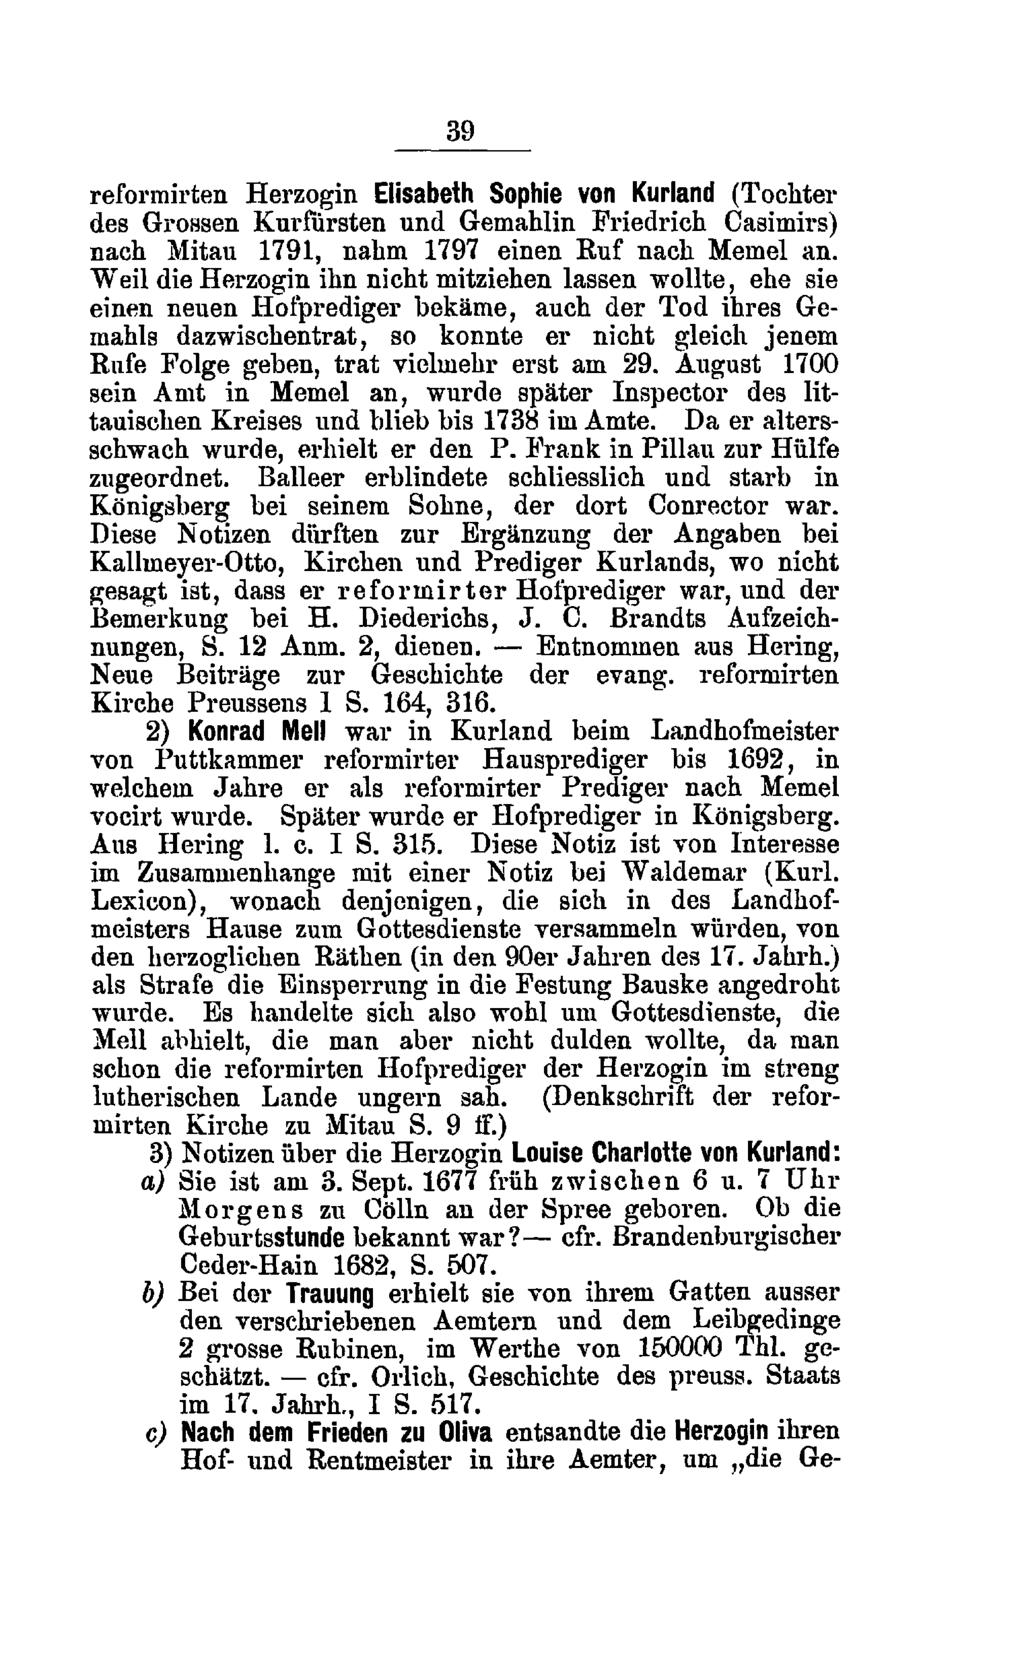 39 reformirten Herzogin Elisabeth Sophie von Kurland (Tochter des Grossen Kurfürsten und Gemahlin Friedrich Casimirs) nach Mitau 1791, nahm 1797 einen Ruf nach Memel an.